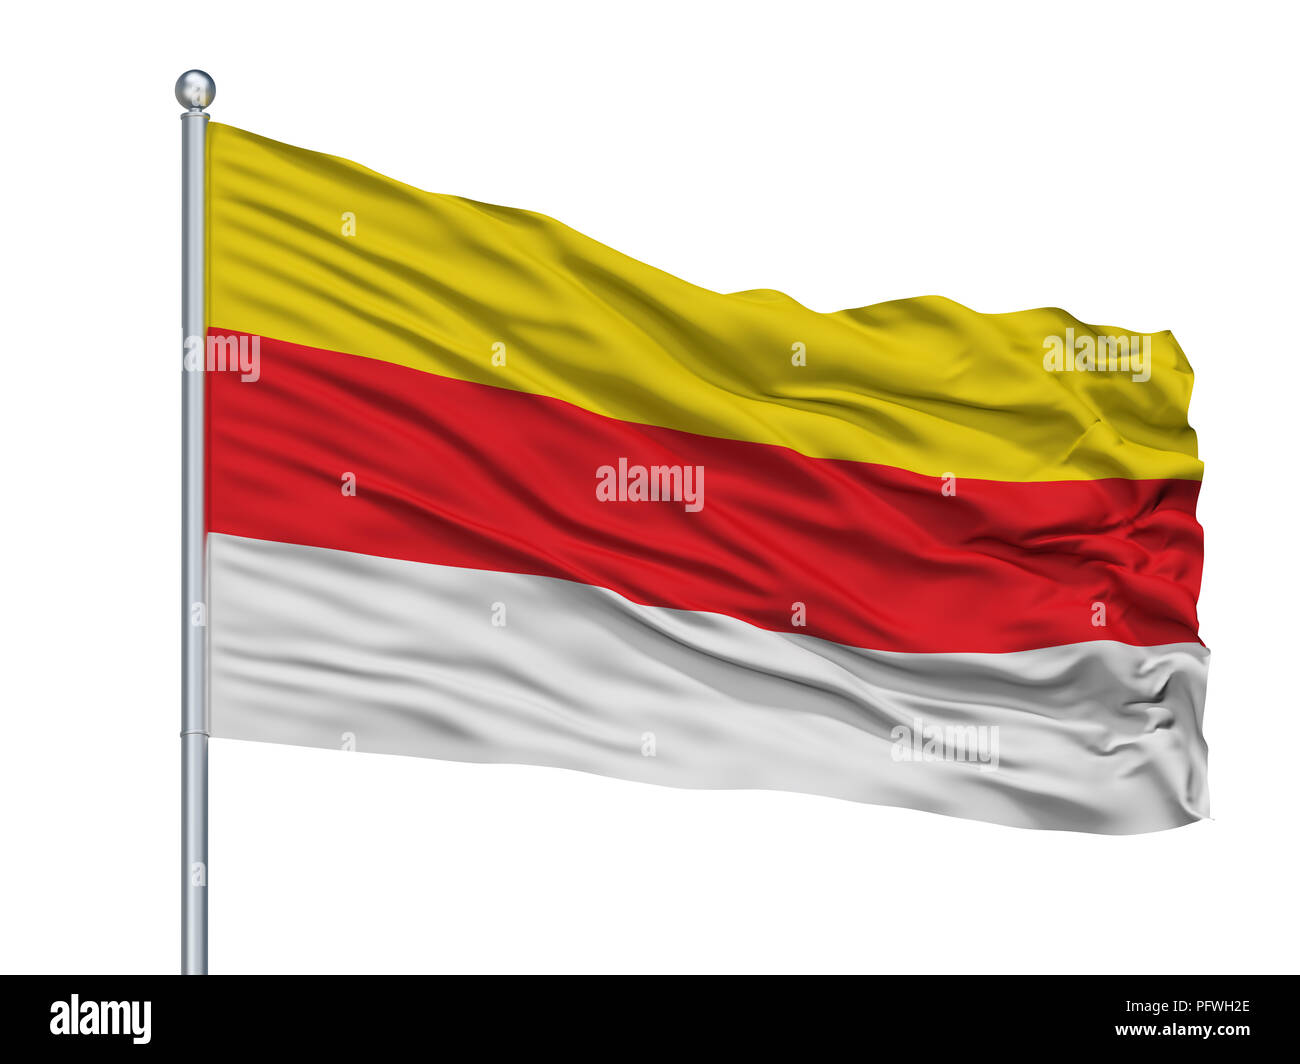 Münster Westfalen Flagge am Fahnenmast, Deutschland, isoliert auf weißem  Hintergrund Stockfotografie - Alamy